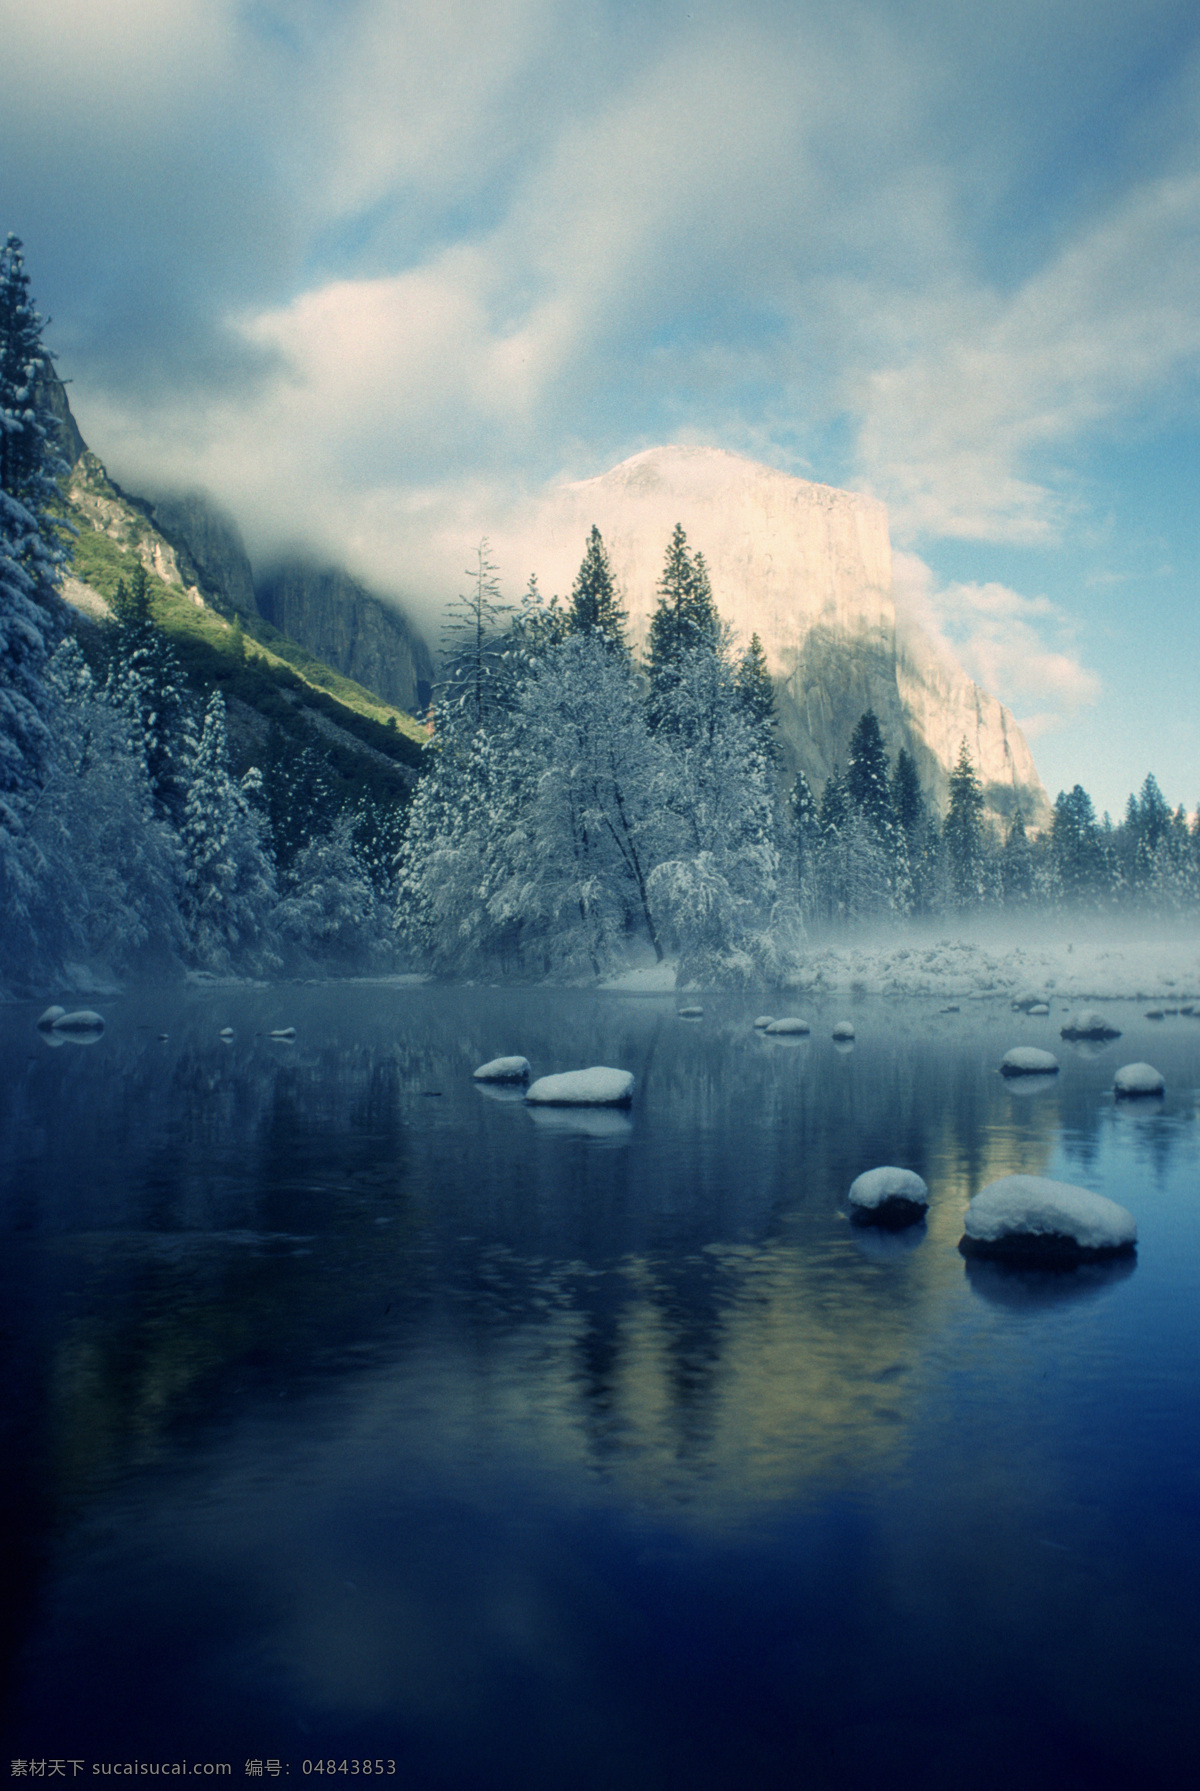 冬天 湖泊 美景 雪山 山峰 湖面 倒影 湖水 景色 风景 摄影图 高清图片 自然风景 自然景观 黑色